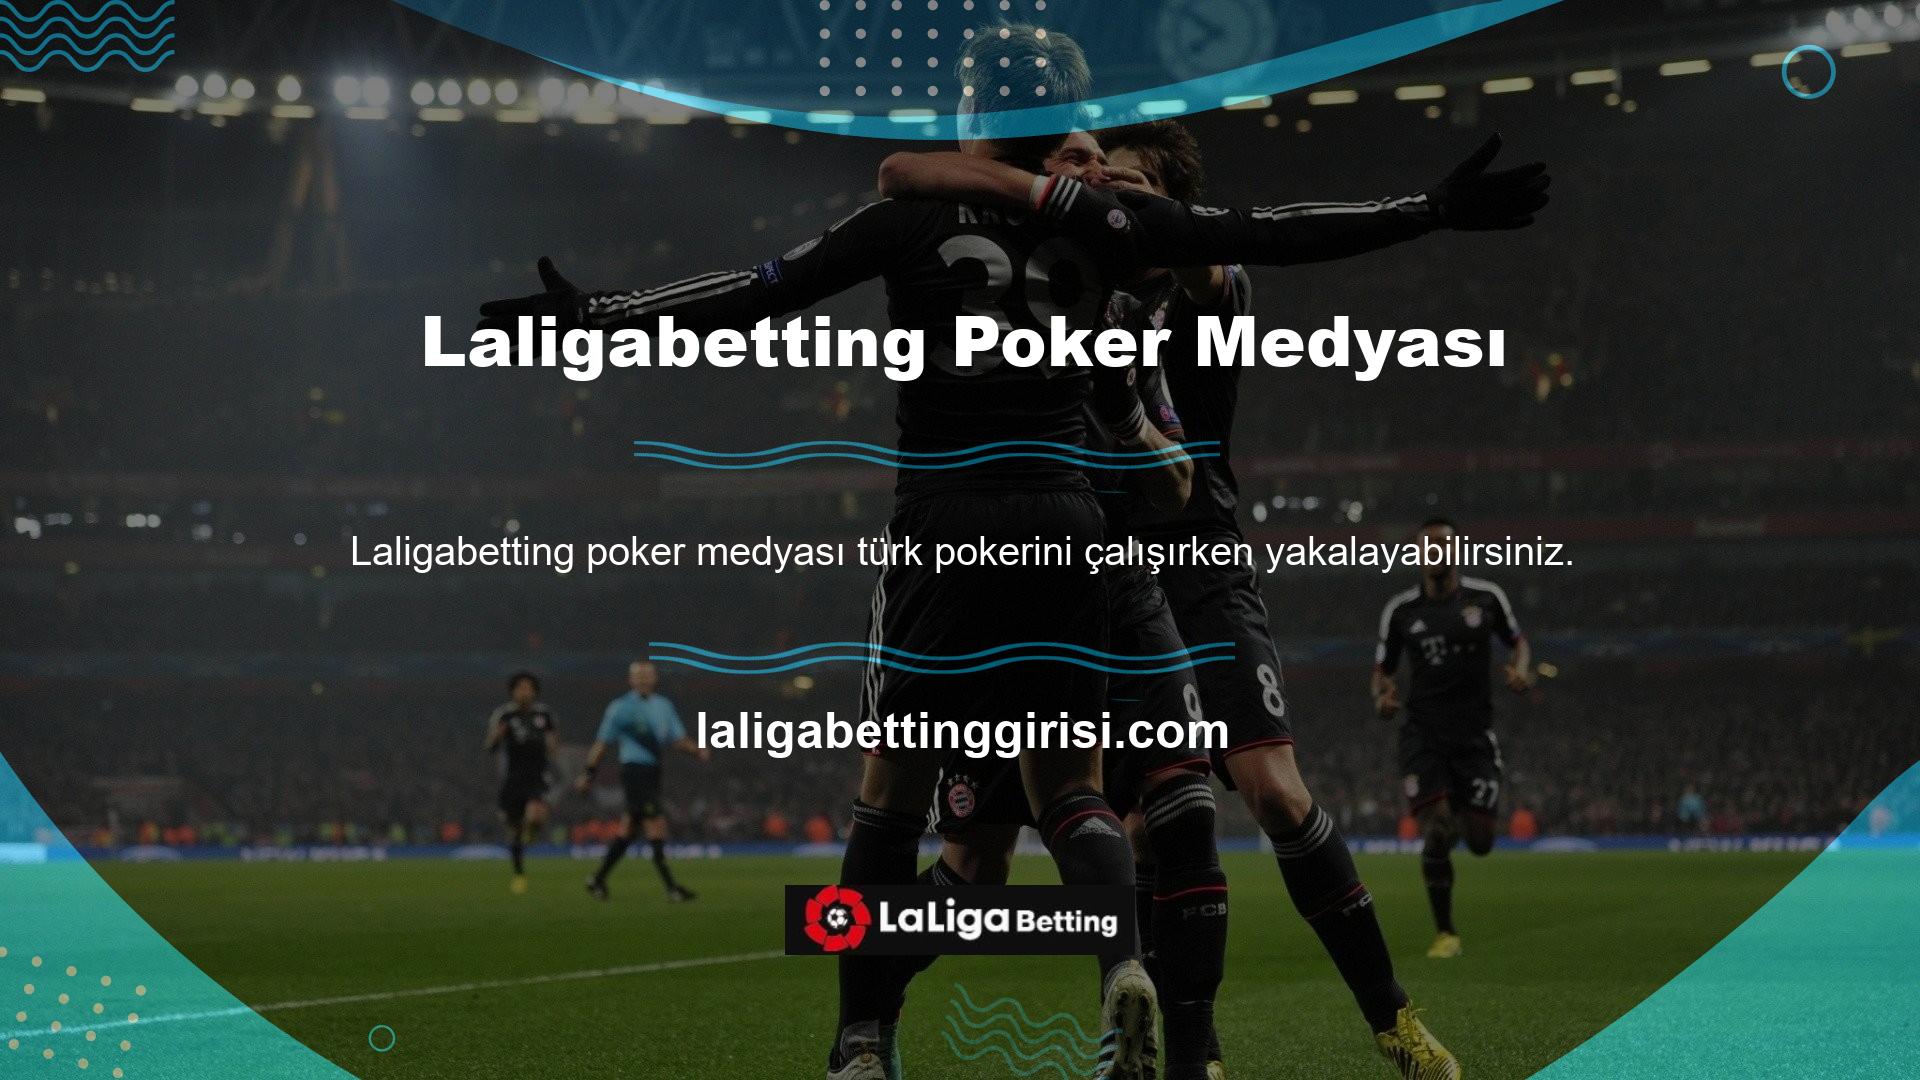 Türk medyasında da poker içeriğine yer verildi ve şu anda bu içerik Türk oyuncu sitelerinde öne çıkıyor